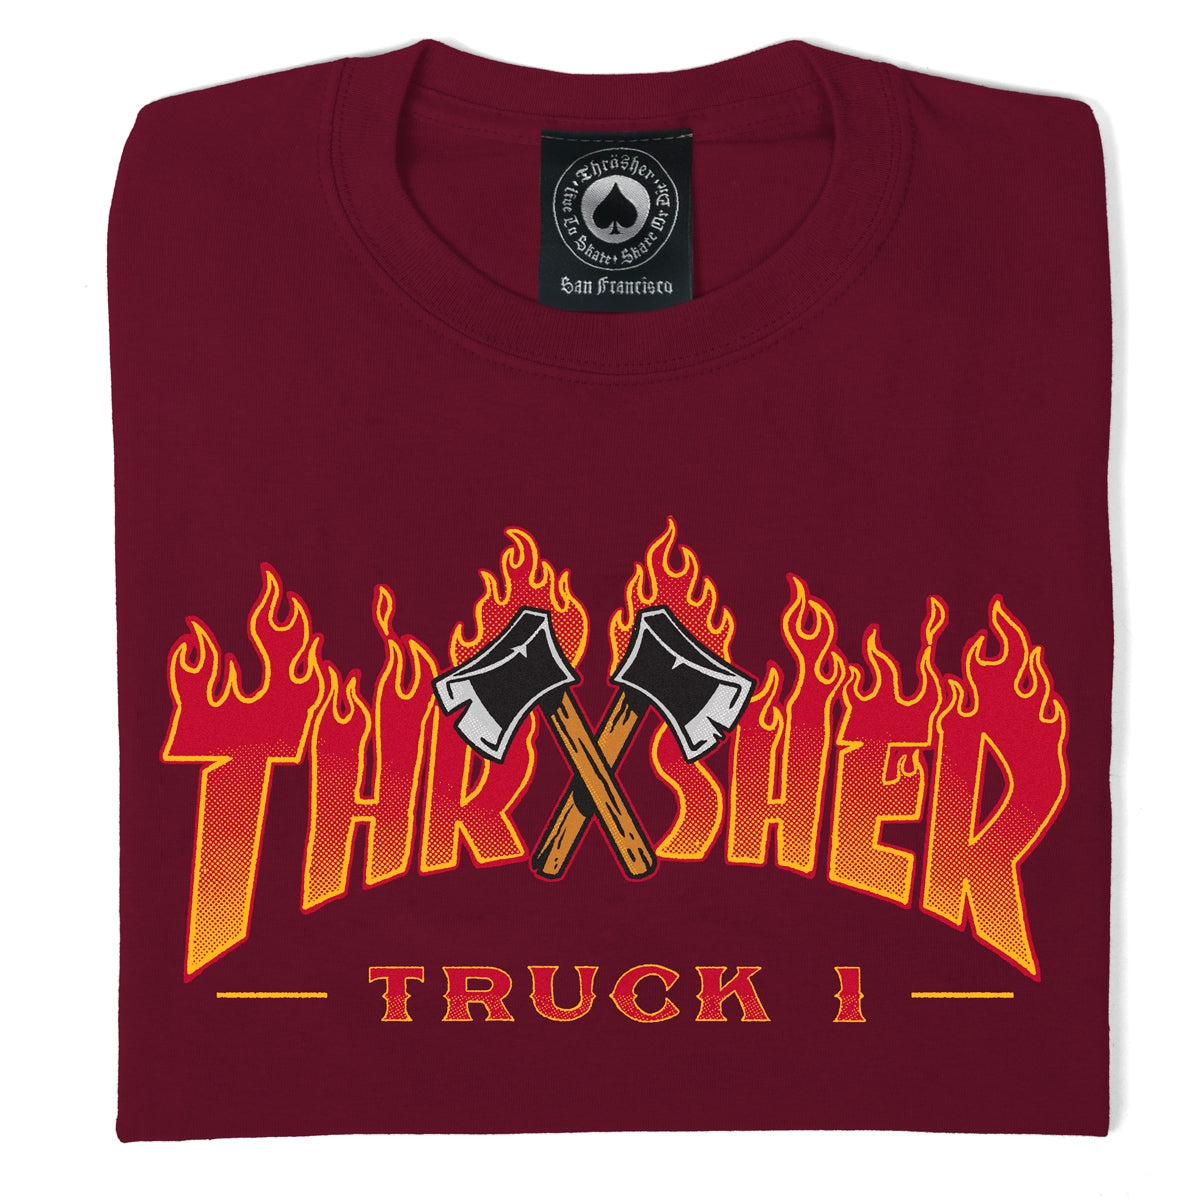 Thrasher - Polera Truck 1 Maroon